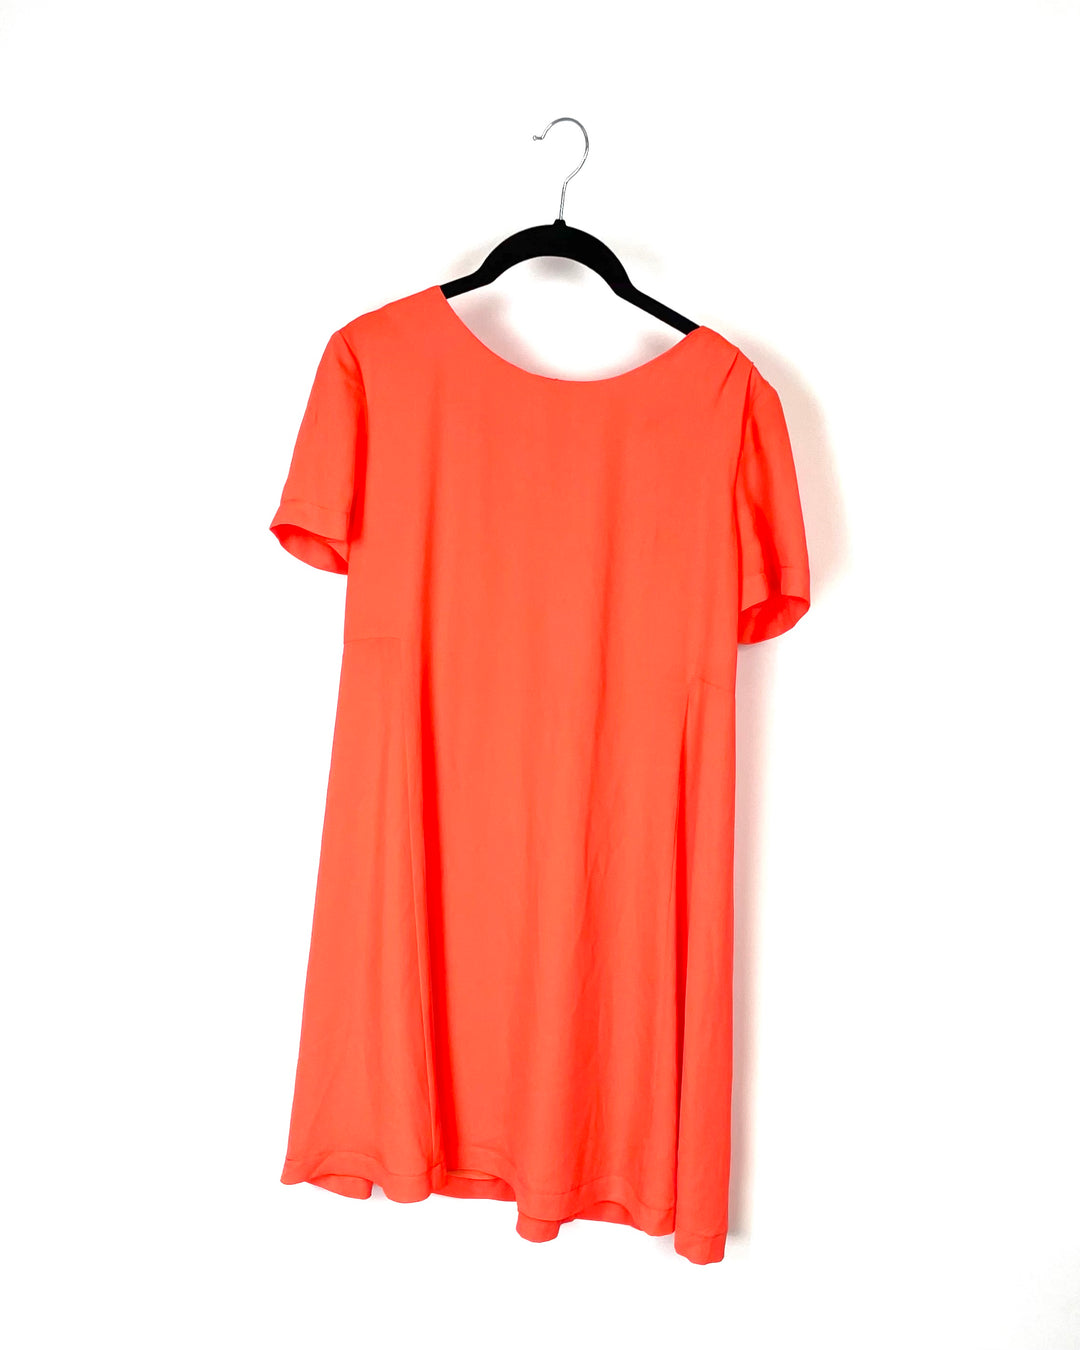 Orange Short Sleeve Dress - Size 4-6